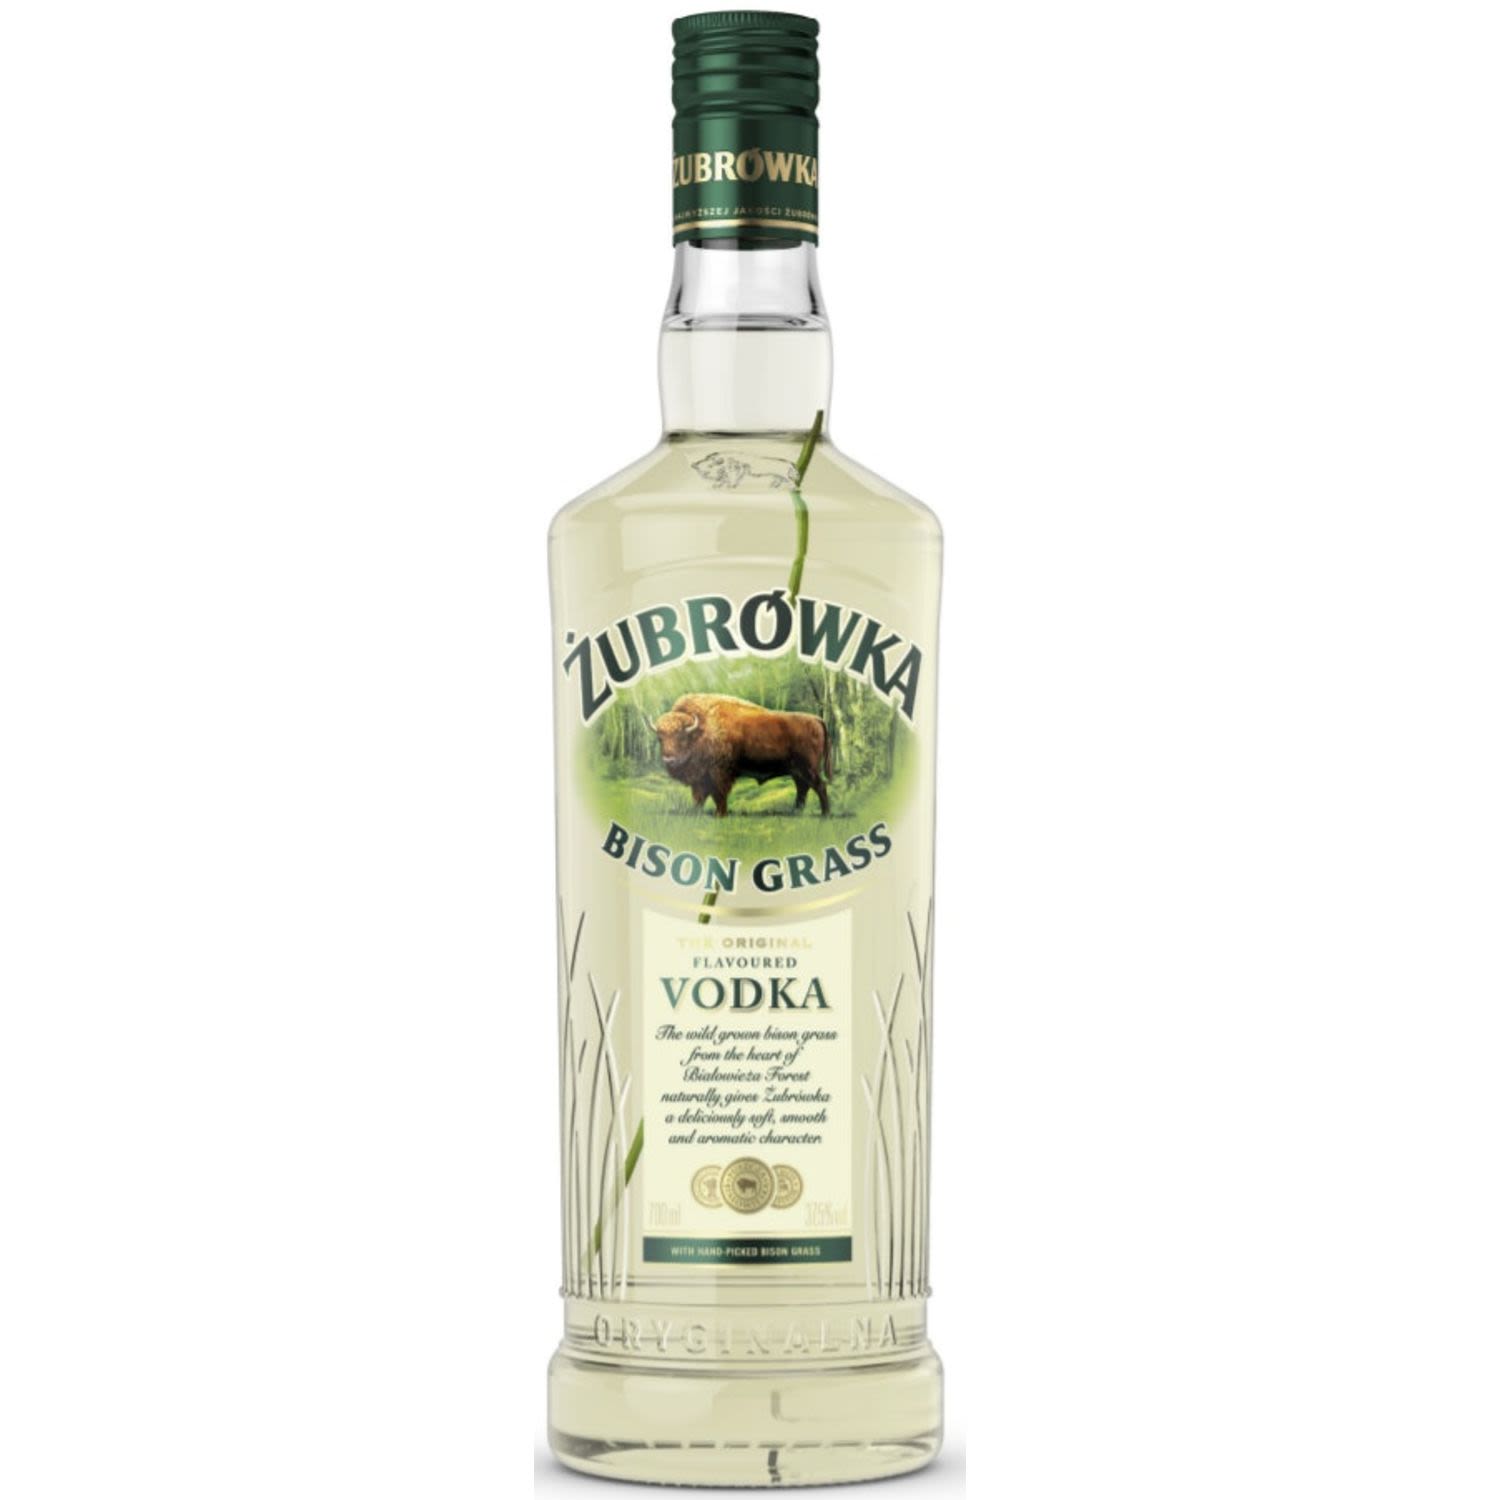 Zubrowka Bison Grass Vodka 700mL Bottle